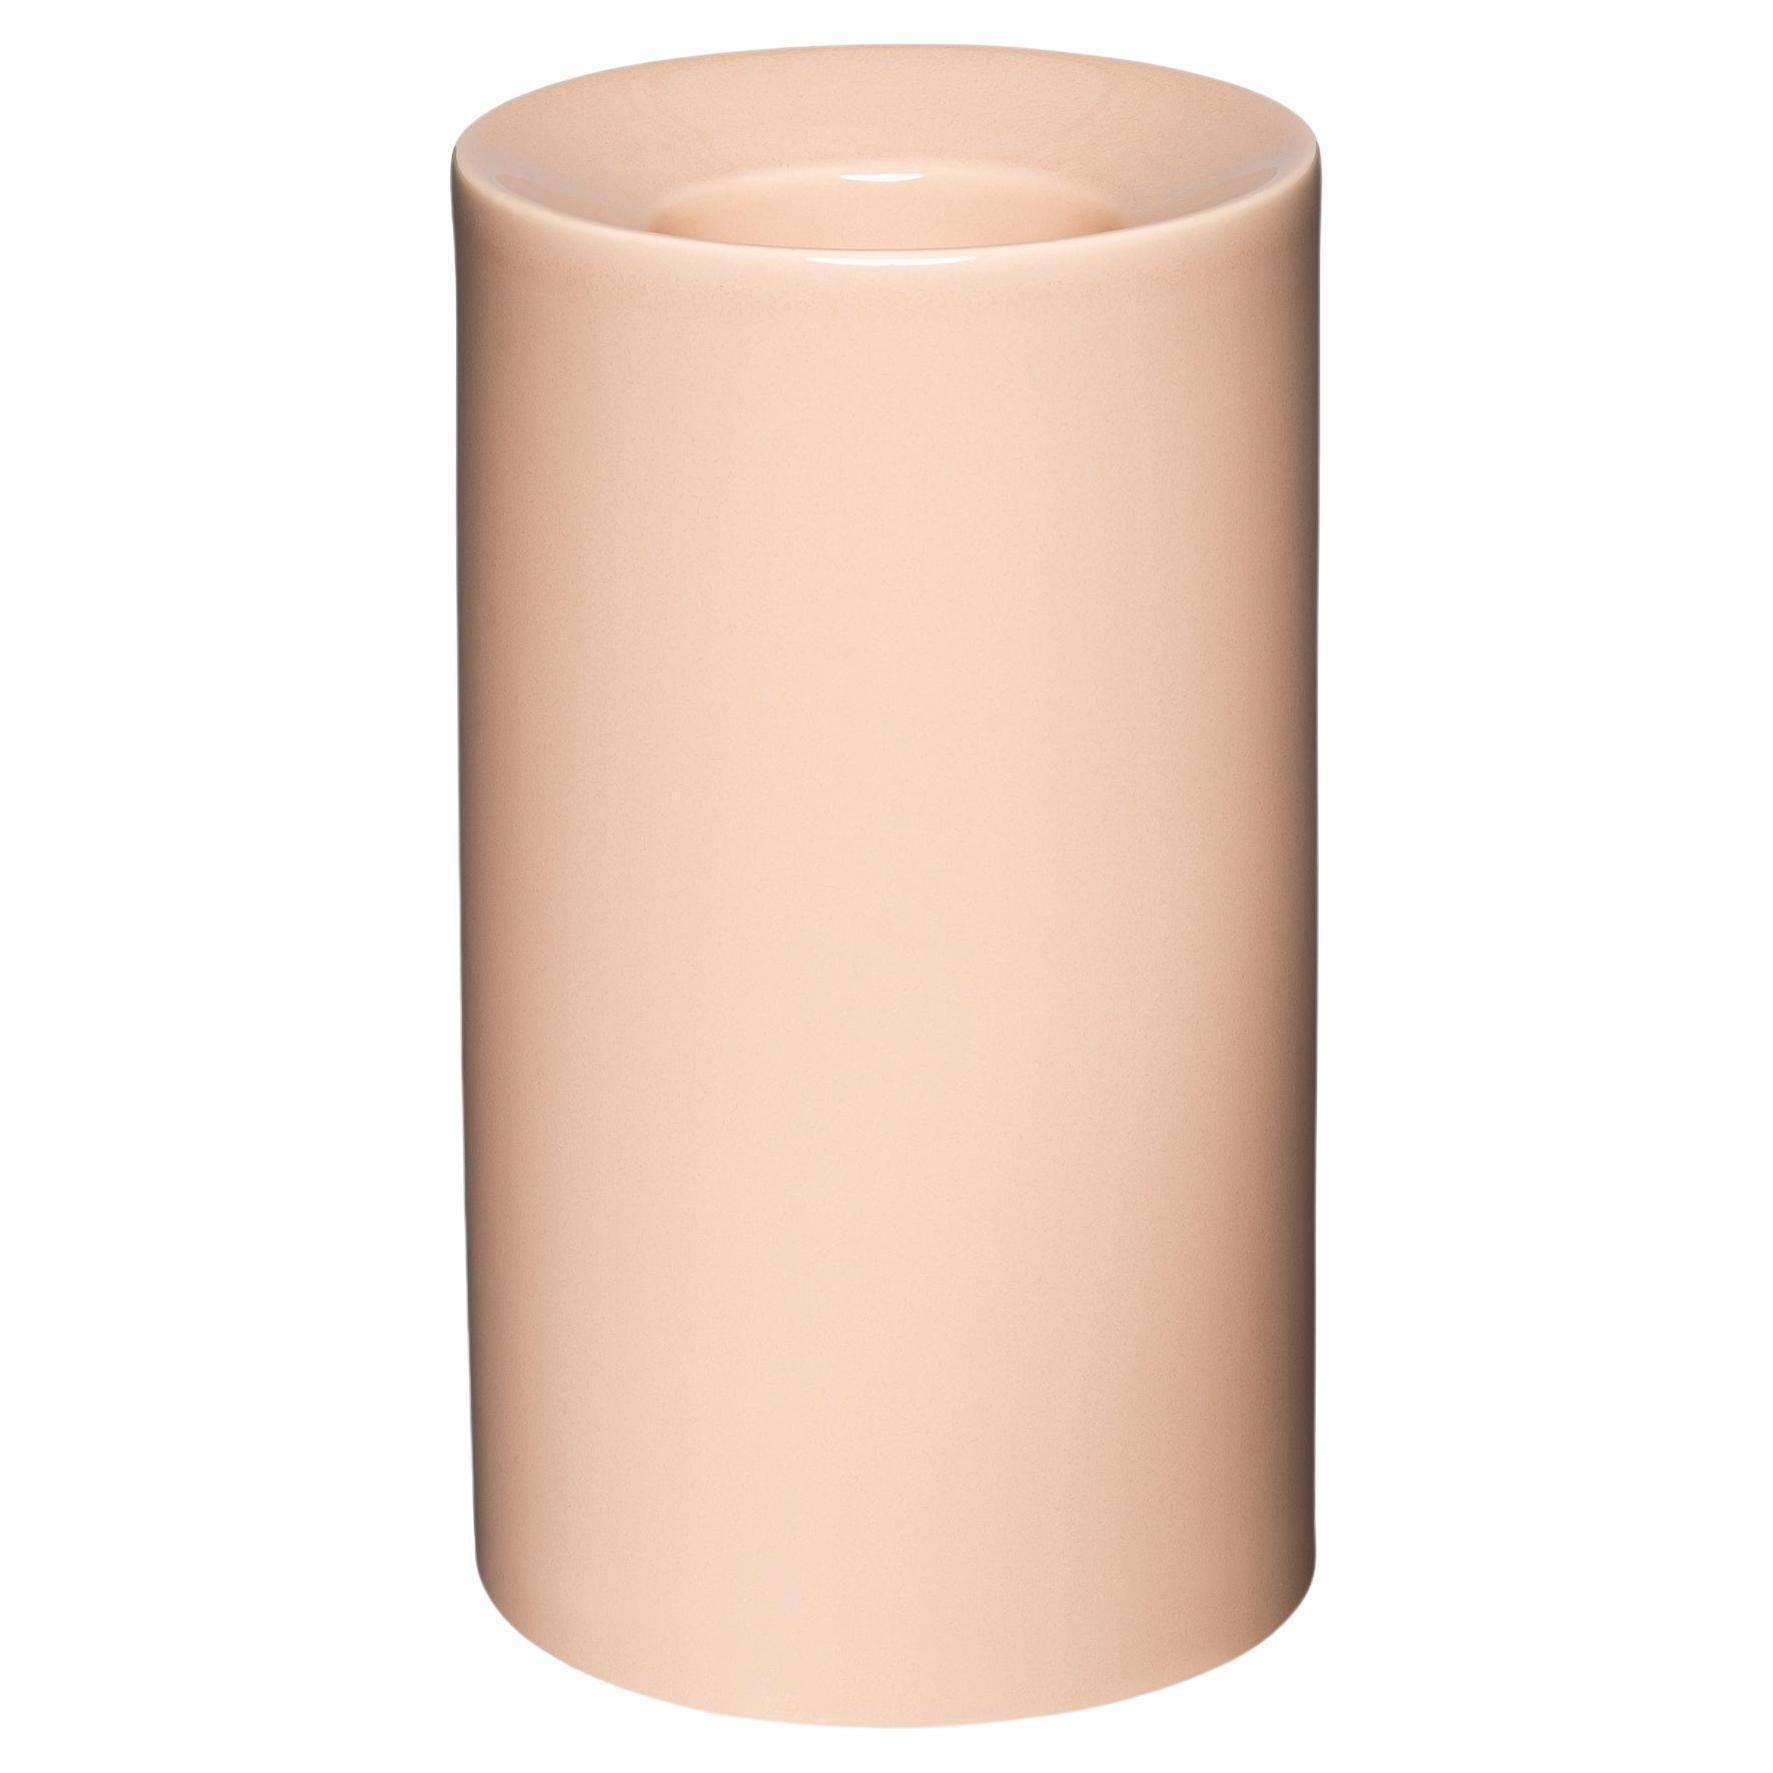 Minimalist Ceramic Vase - Nude 